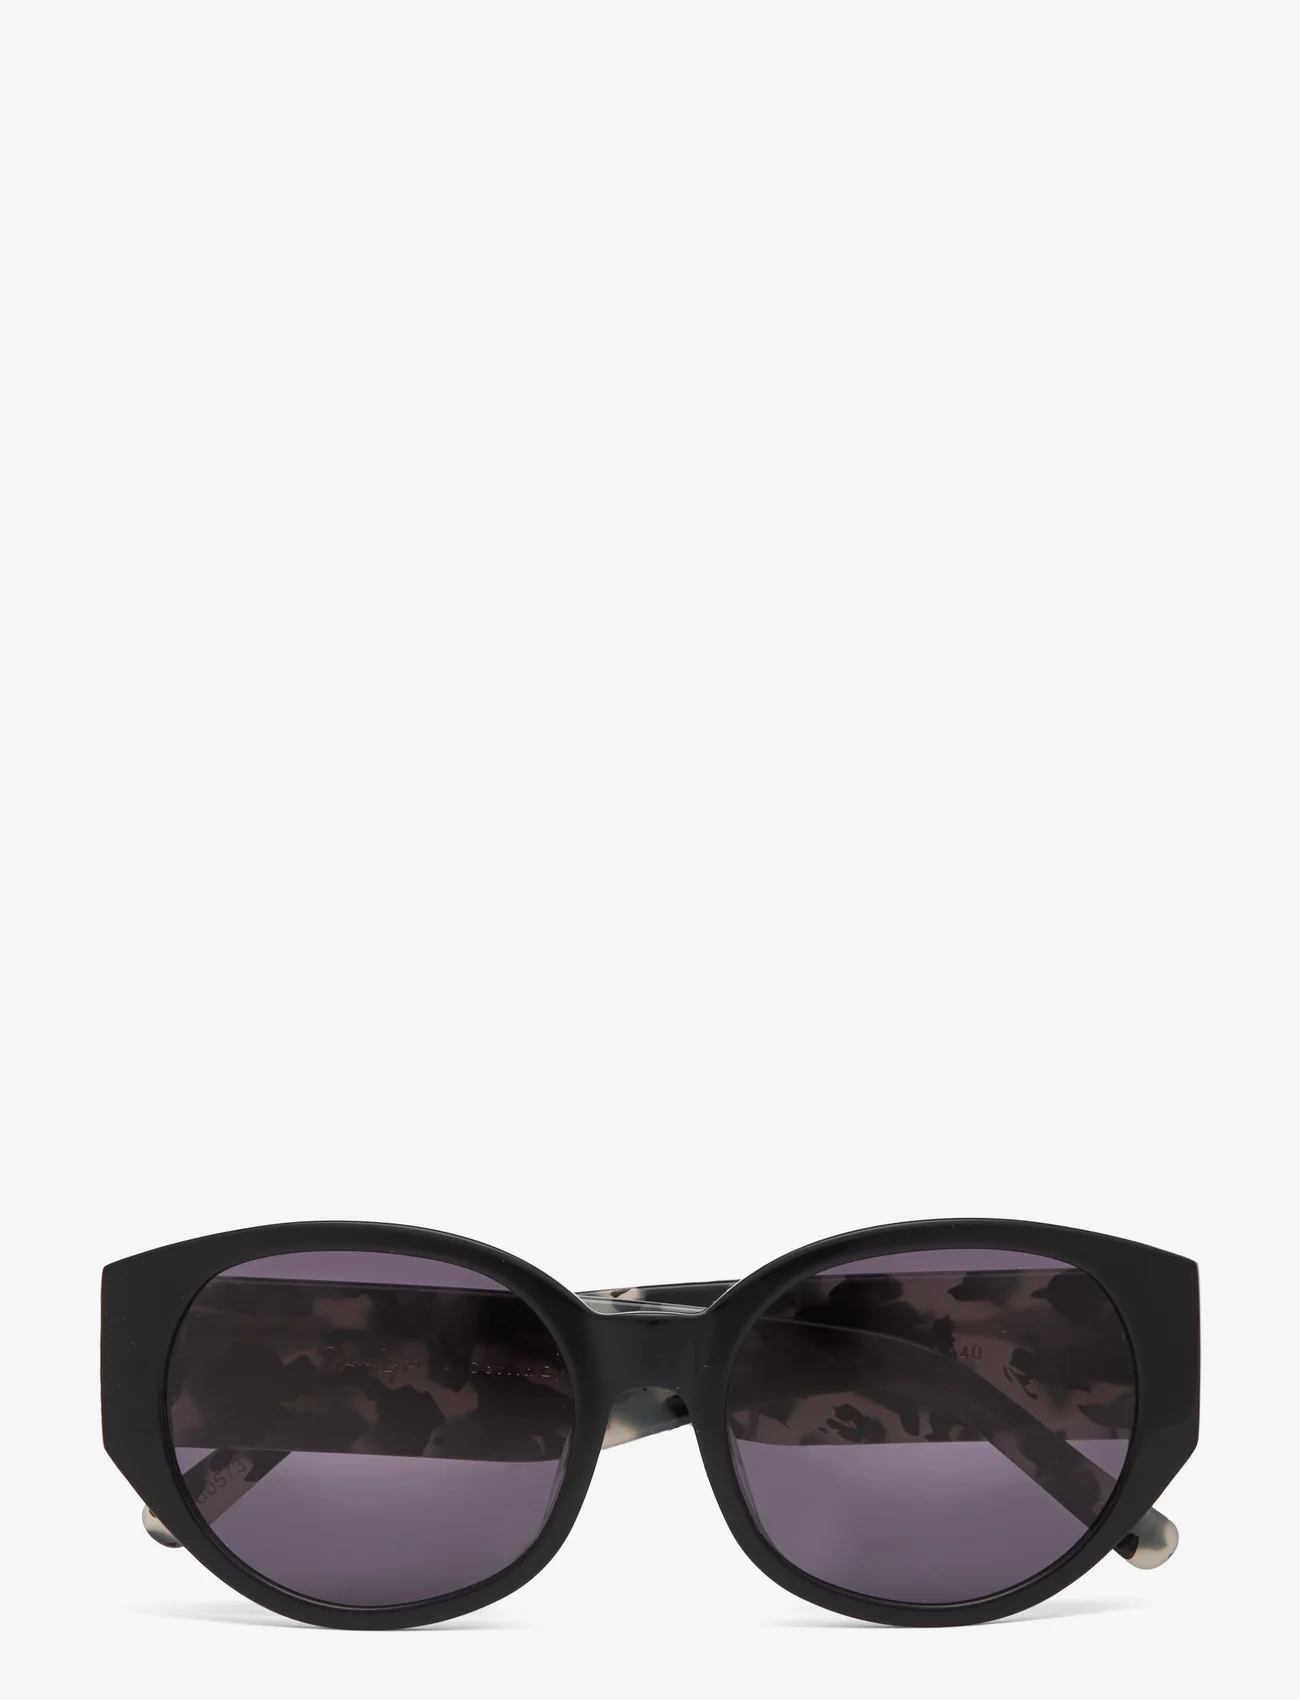 Corlin Eyewear - Windy Black/Grey - okulary przeciwsłoneczne okrągłe - multi coloured - 0